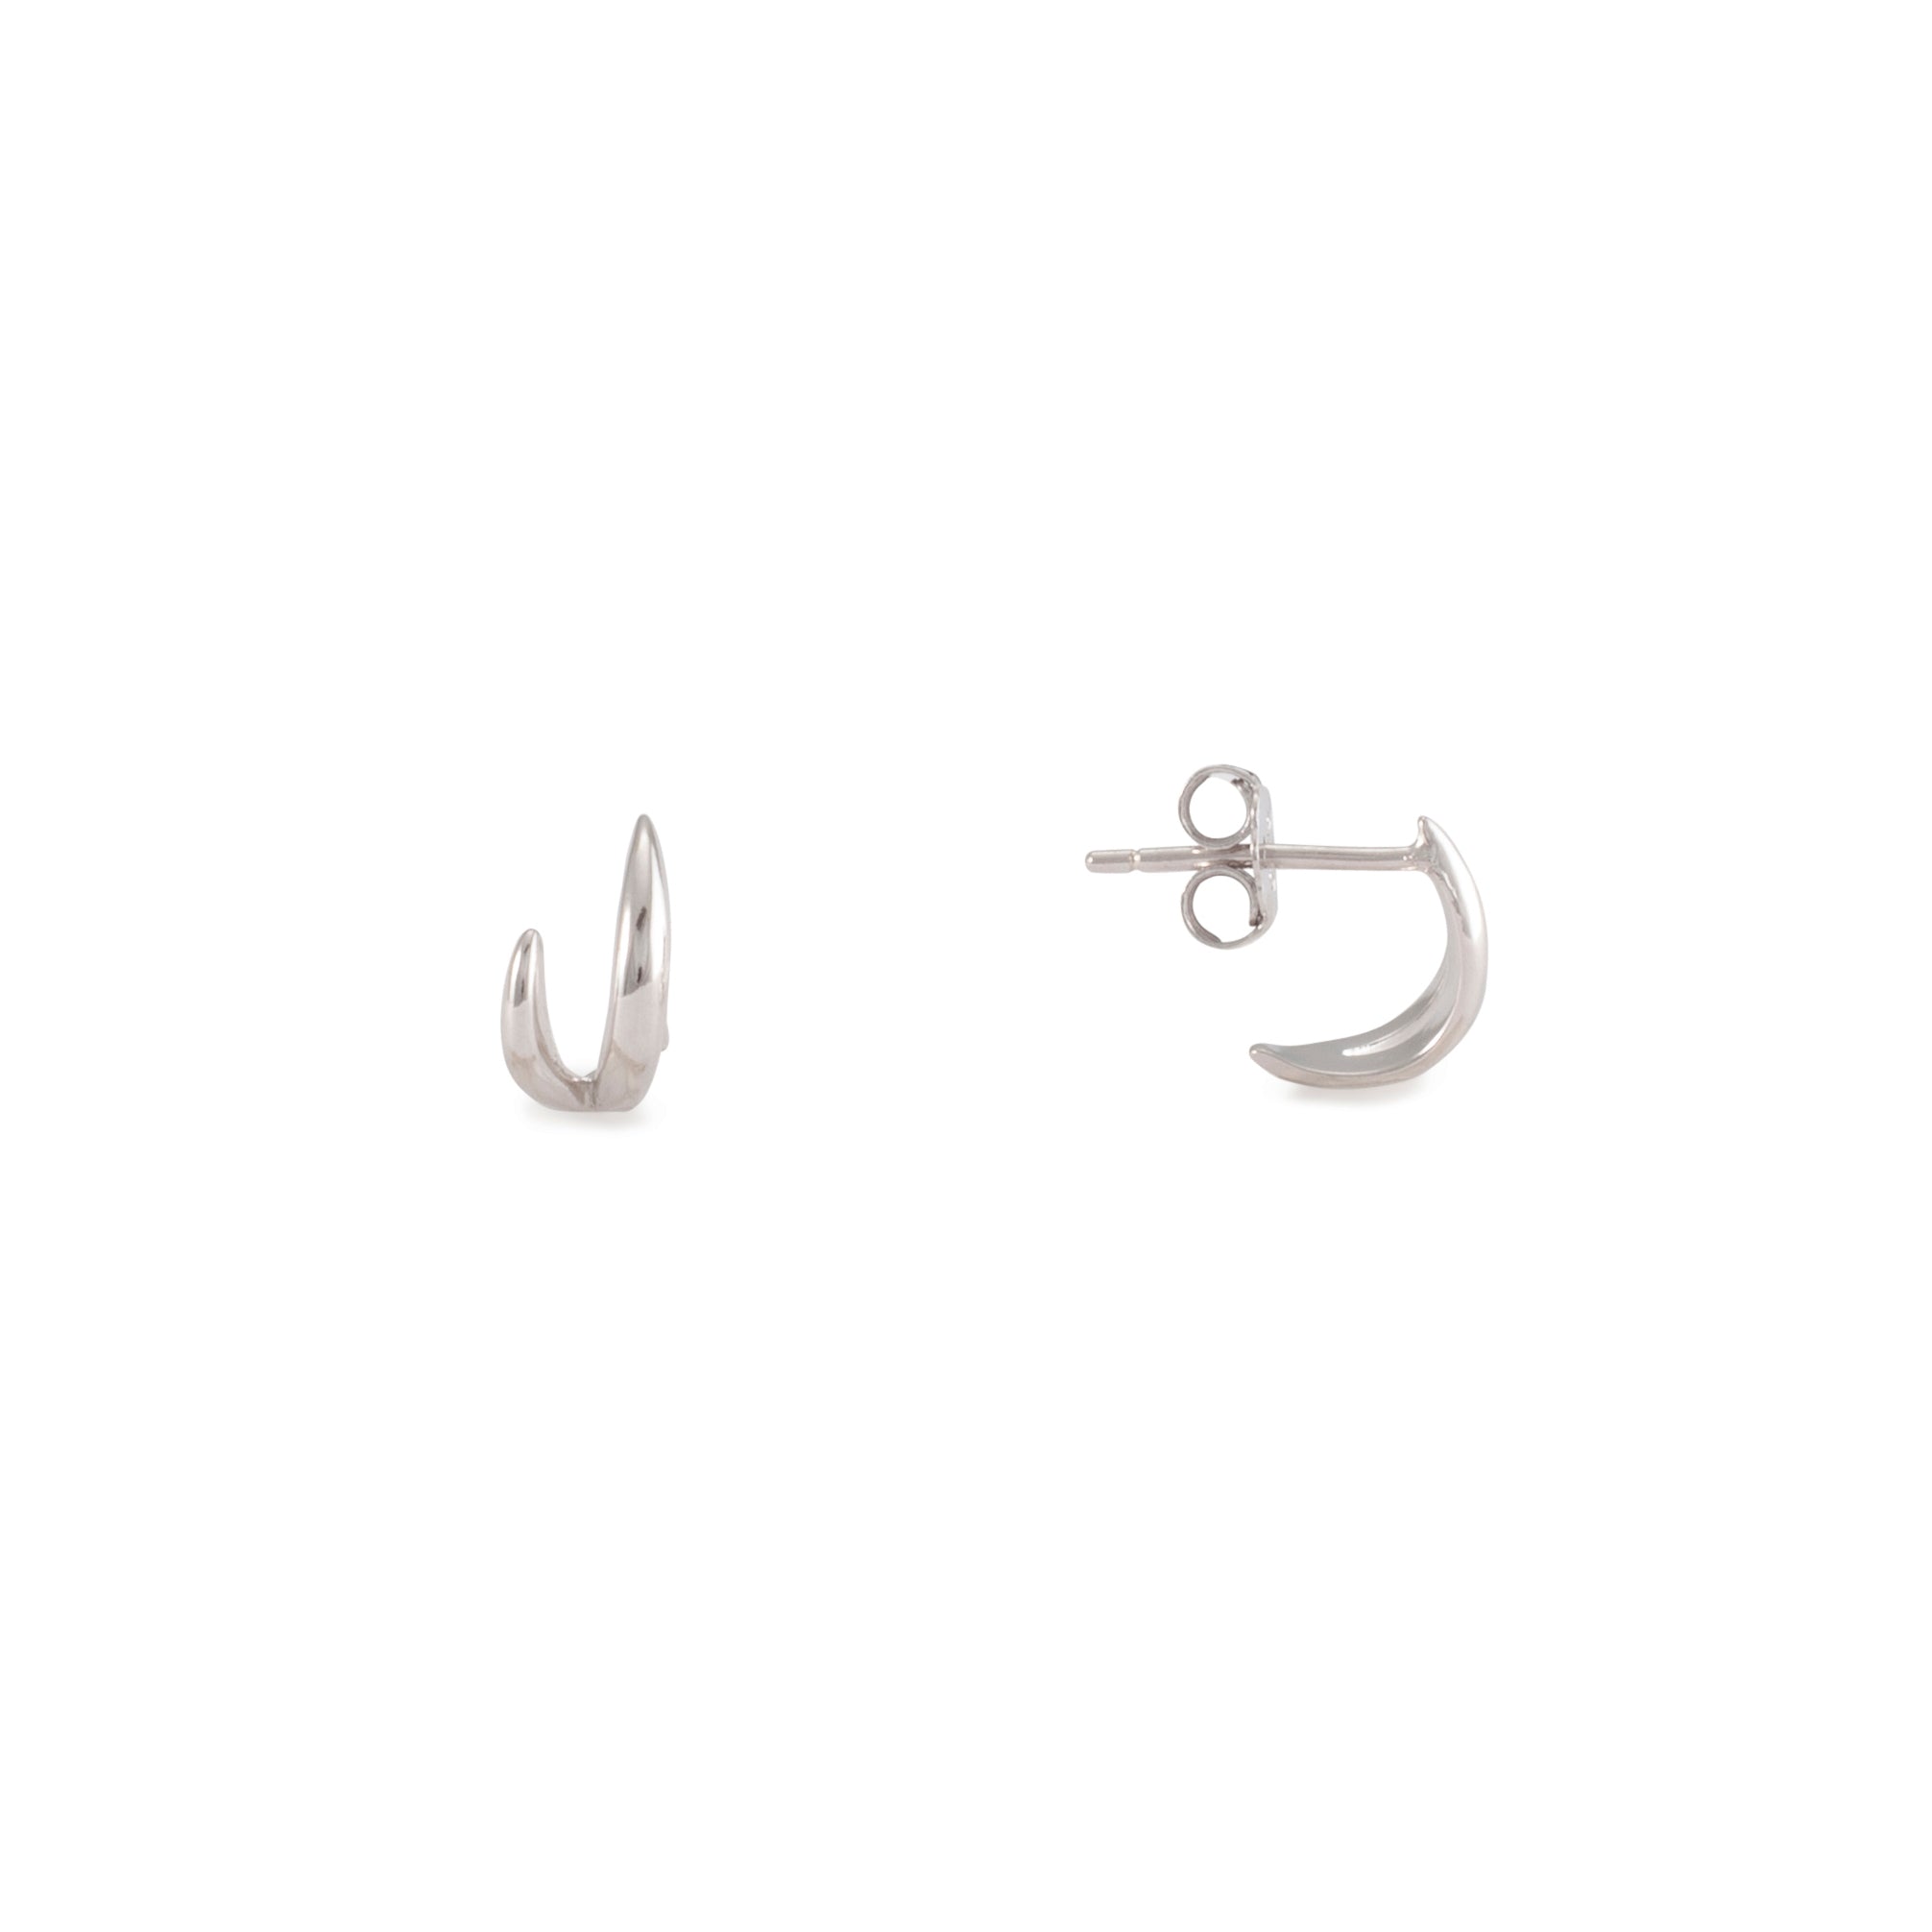 Silver claw stud earrings